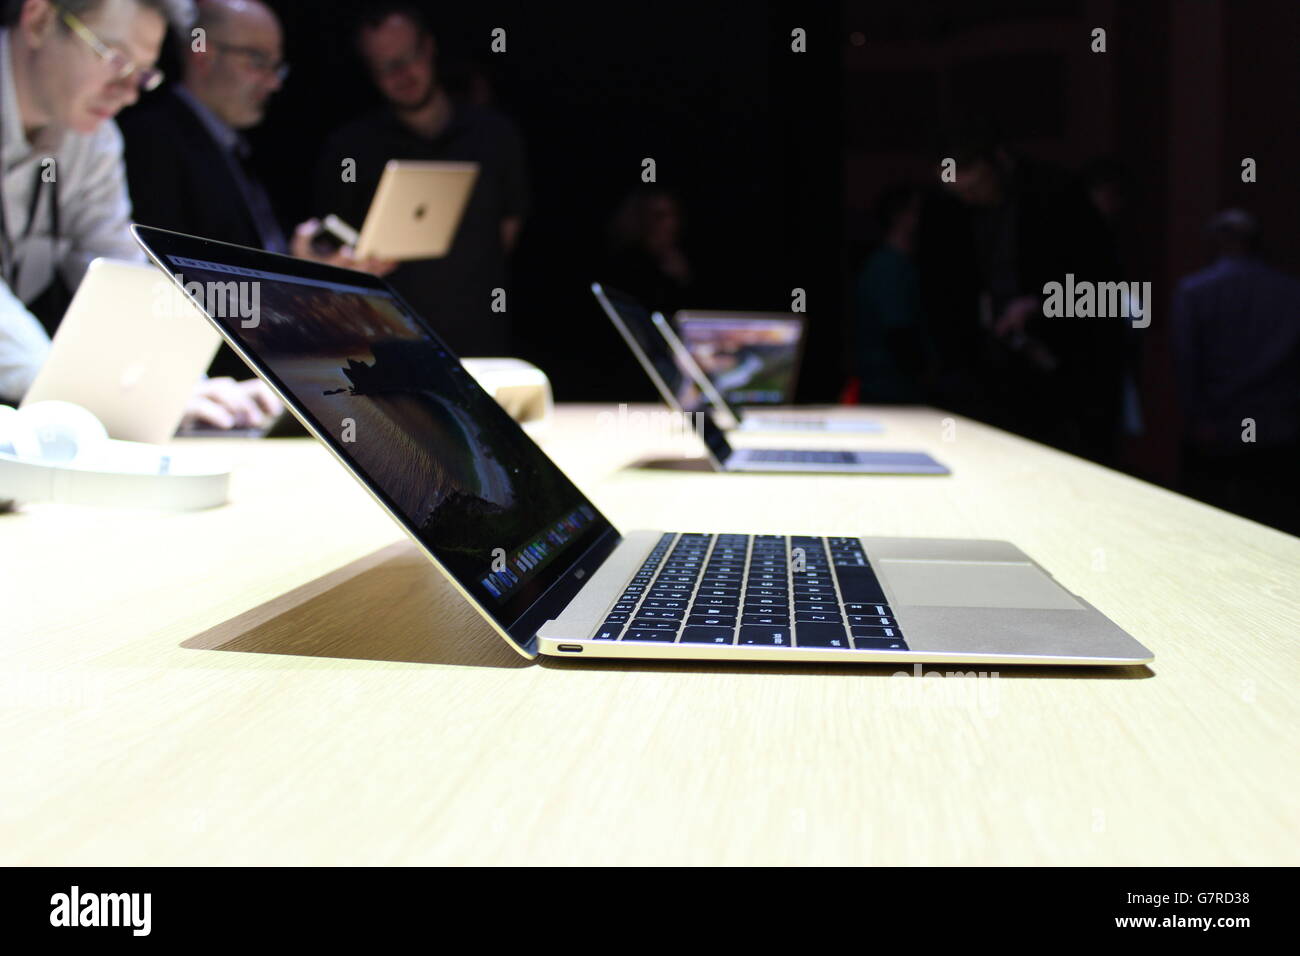 Il nuovo MacBook viene provato in occasione di un evento Apple a Berlino, in Germania, dopo che la società di computer ha presentato nuovi prodotti. Foto Stock